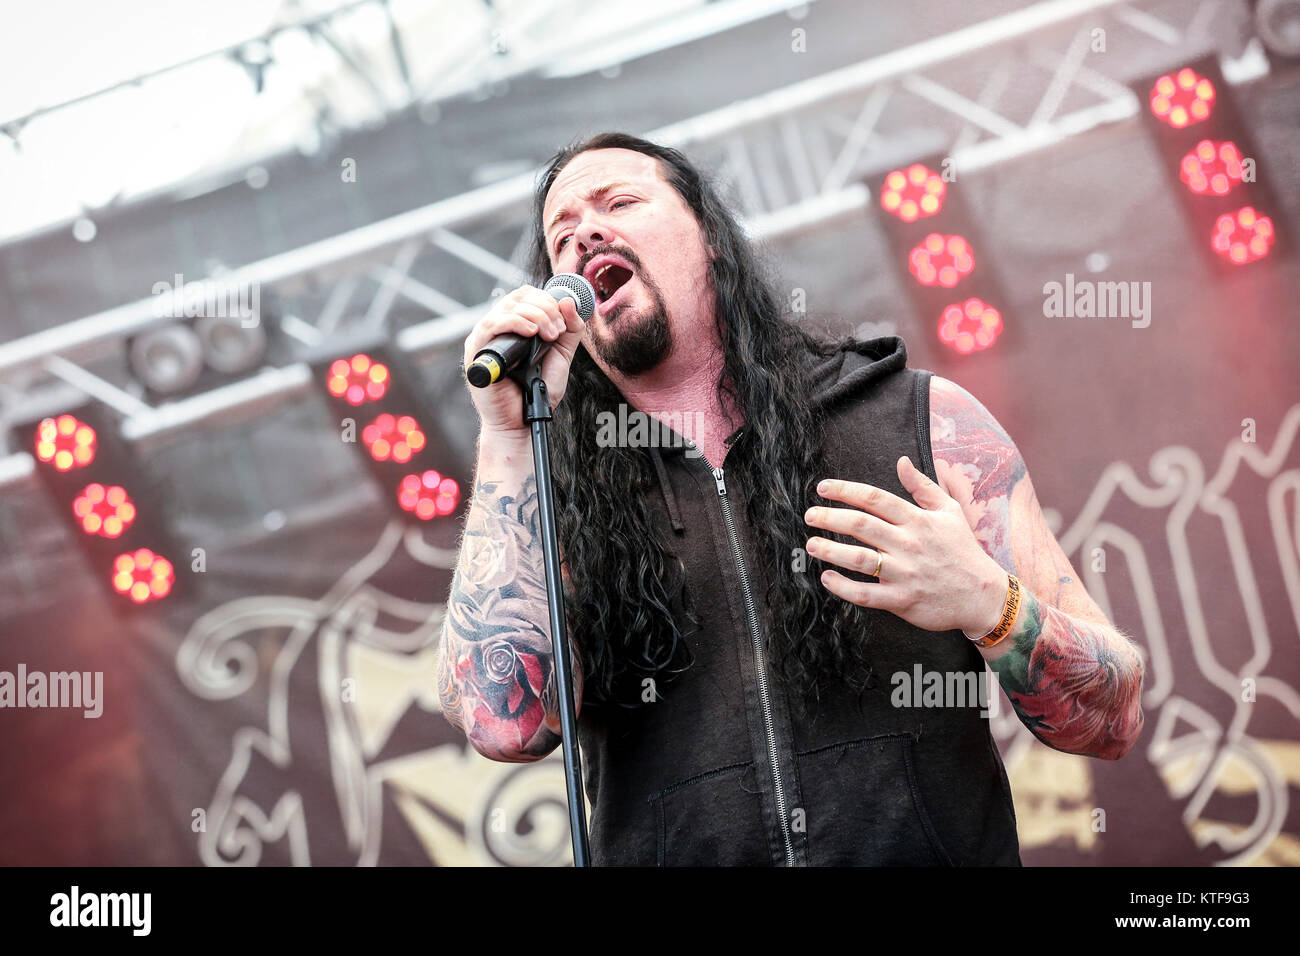 Le groupe de metal progressif suédois Evergrey effectue un concert live au festival de musique suédois Sweden Rock Festival 2015. Ici le chanteur Tom S. Englund est vu sur scène. La Suède, 05/06 2015. Banque D'Images